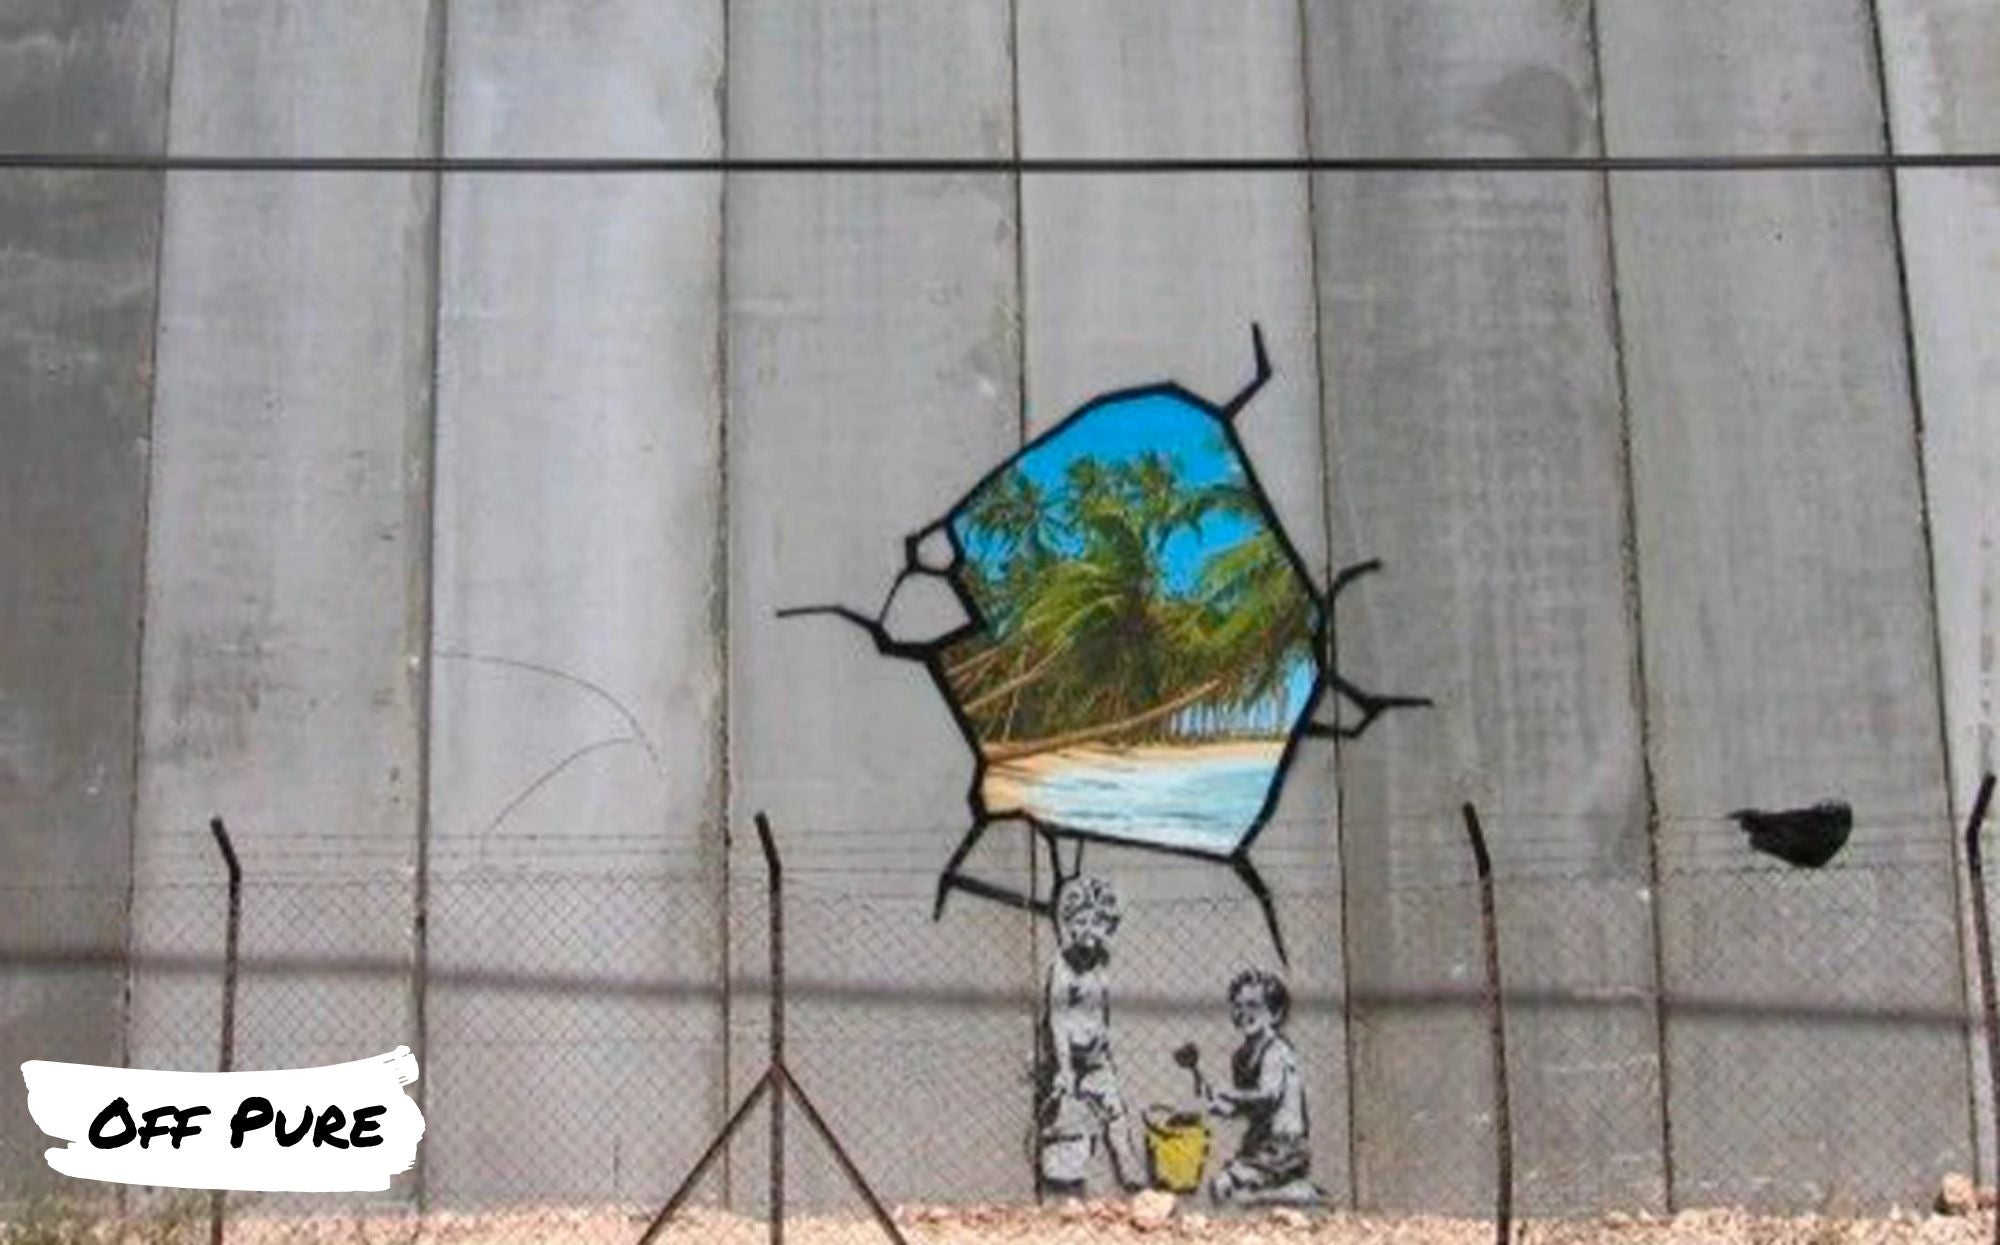 « Beach Boys Banksy », une œuvre politique pleine de sens